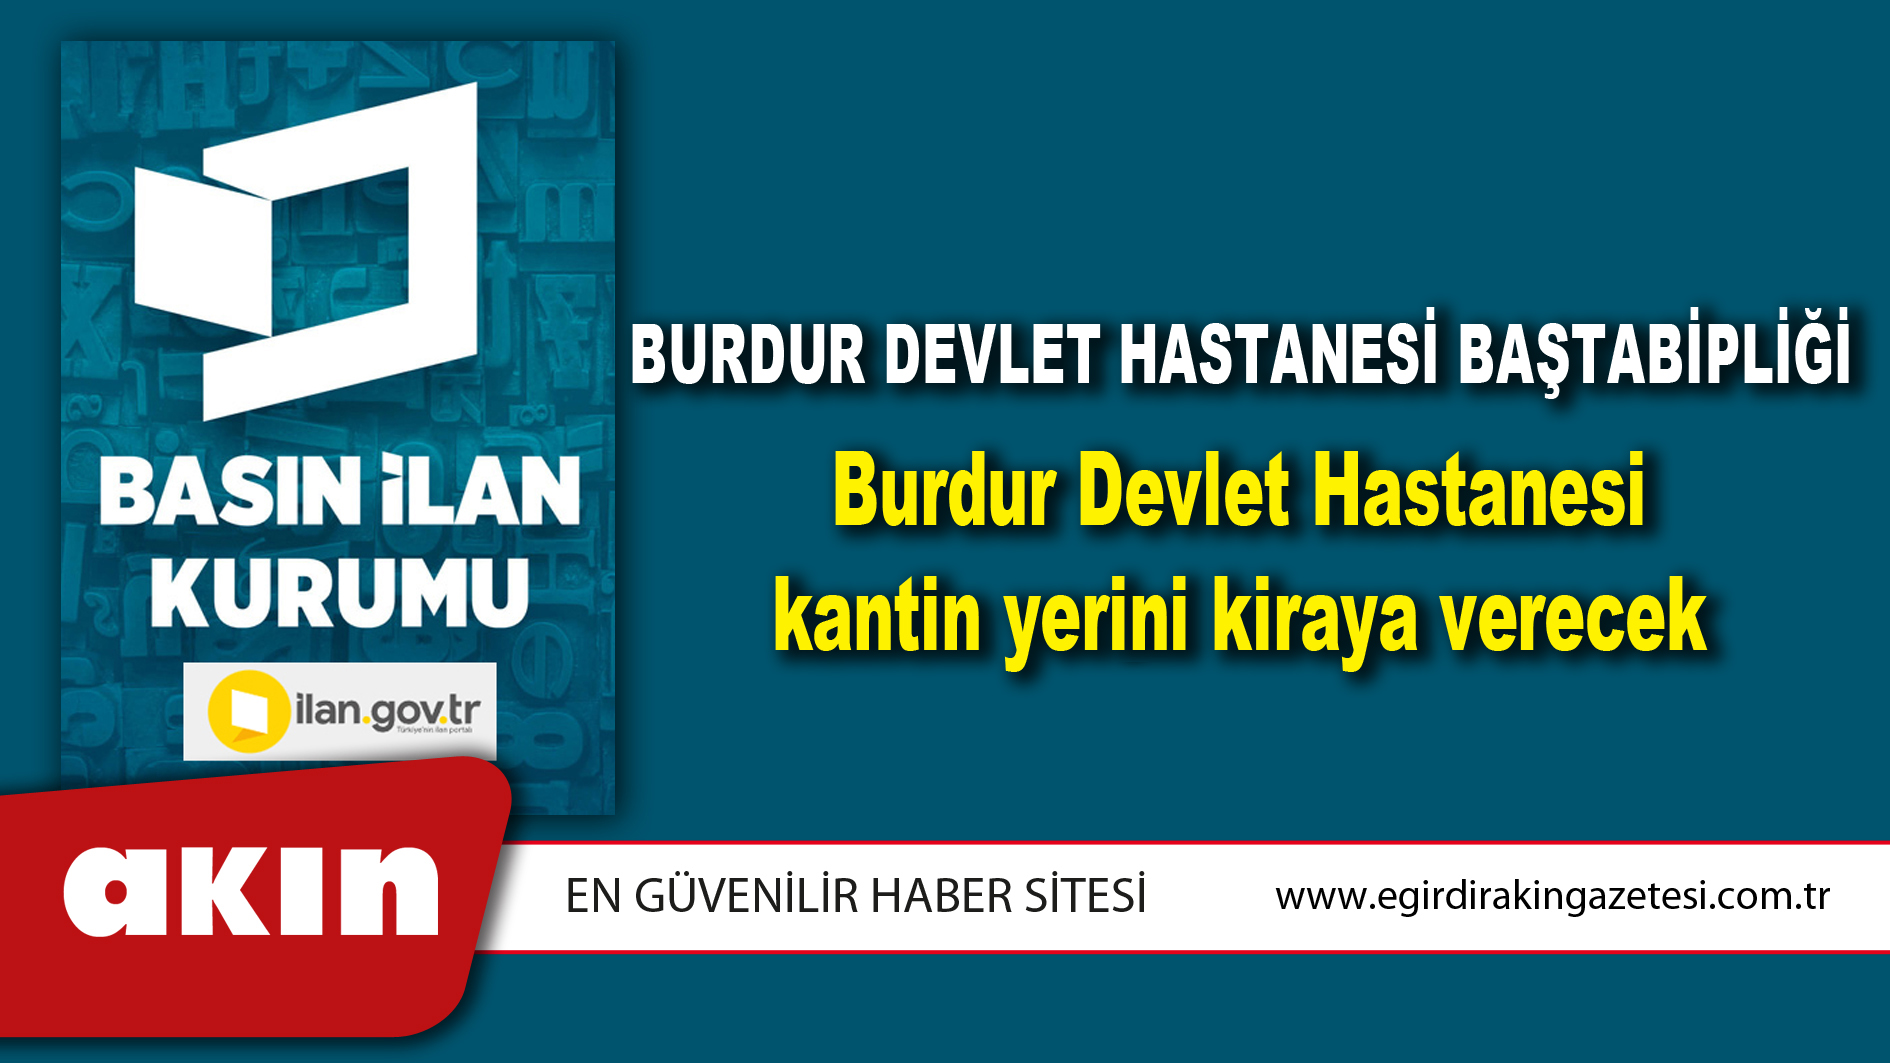 Burdur Devlet Hastanesi Baştabipliği Burdur Devlet Hastanesi kantin yerini kiraya verecek